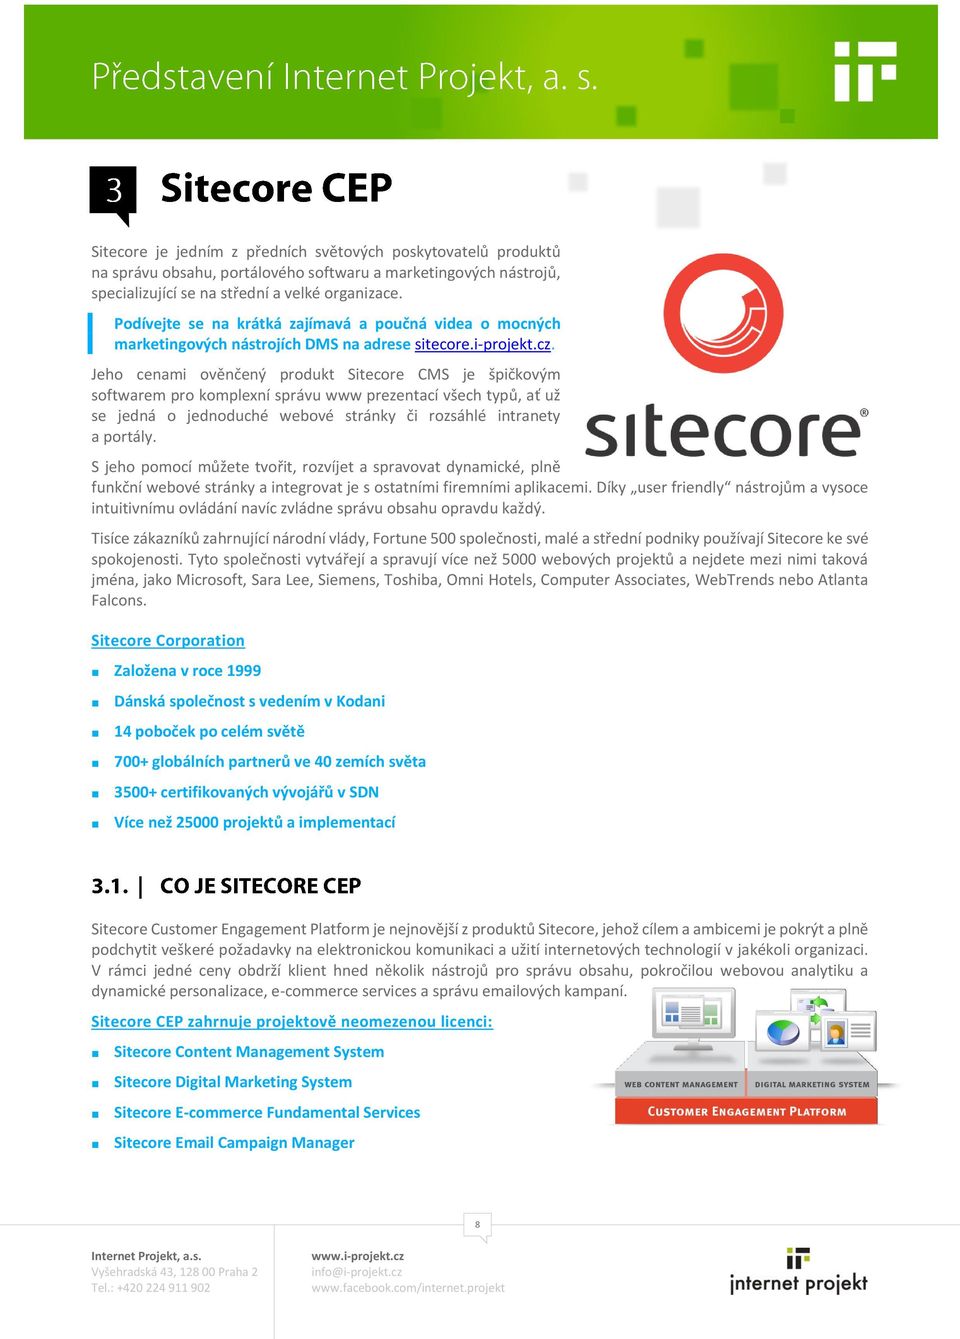 Jeho cenami ověnčený produkt Sitecore CMS je špičkovým softwarem pro komplexní správu www prezentací všech typů, ať už se jedná o jednoduché webové stránky či rozsáhlé intranety a portály.